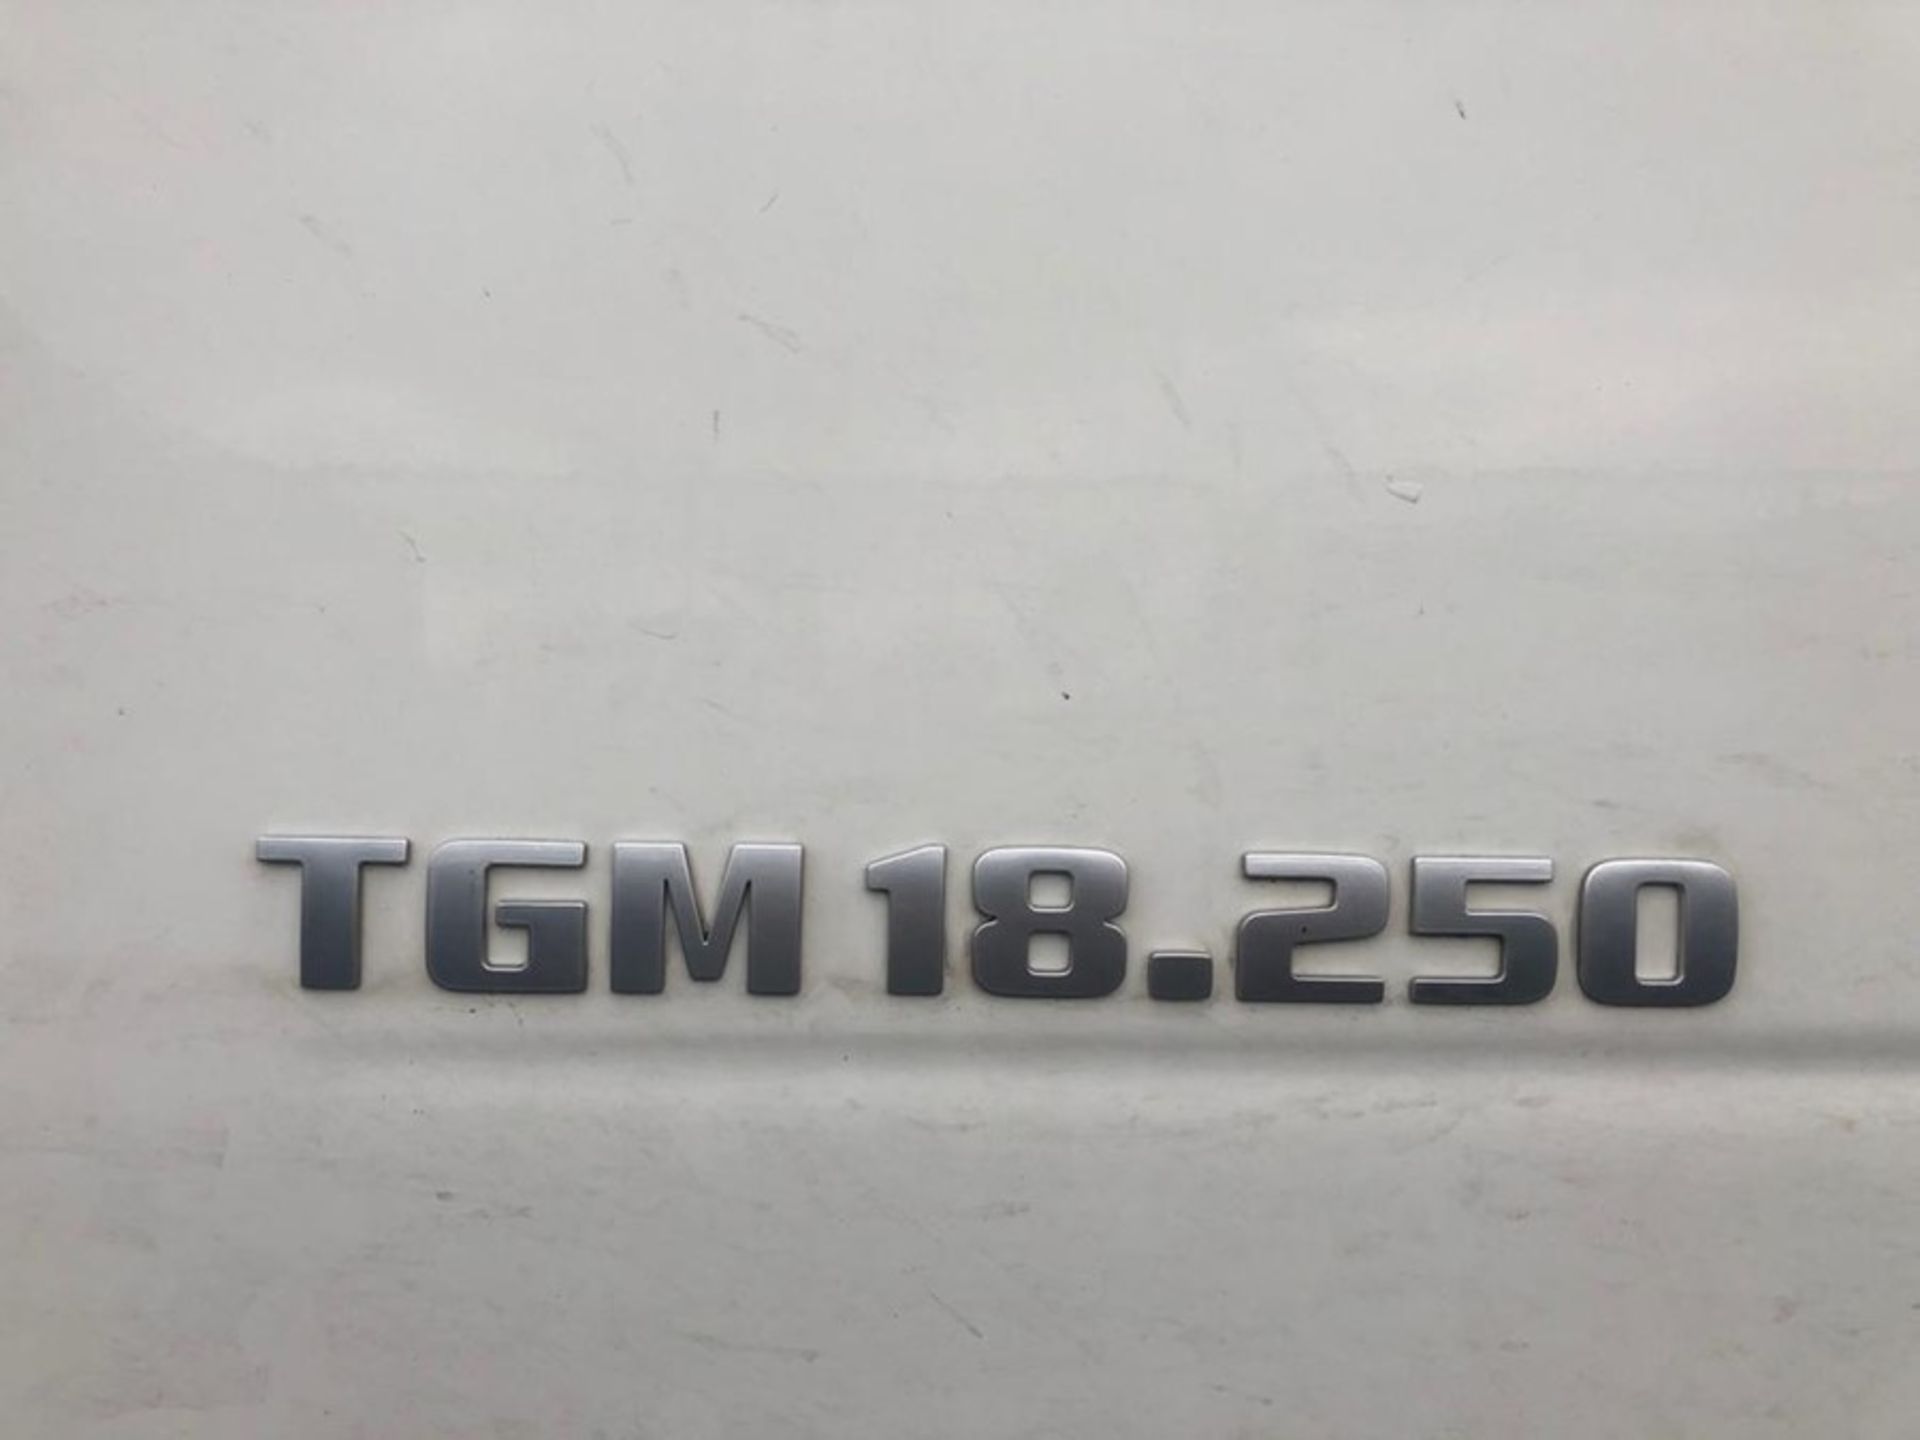 MAN TGM 18.250 4x2 BL Euro 6 Rigid Box (DF14 EZP) - Image 8 of 13